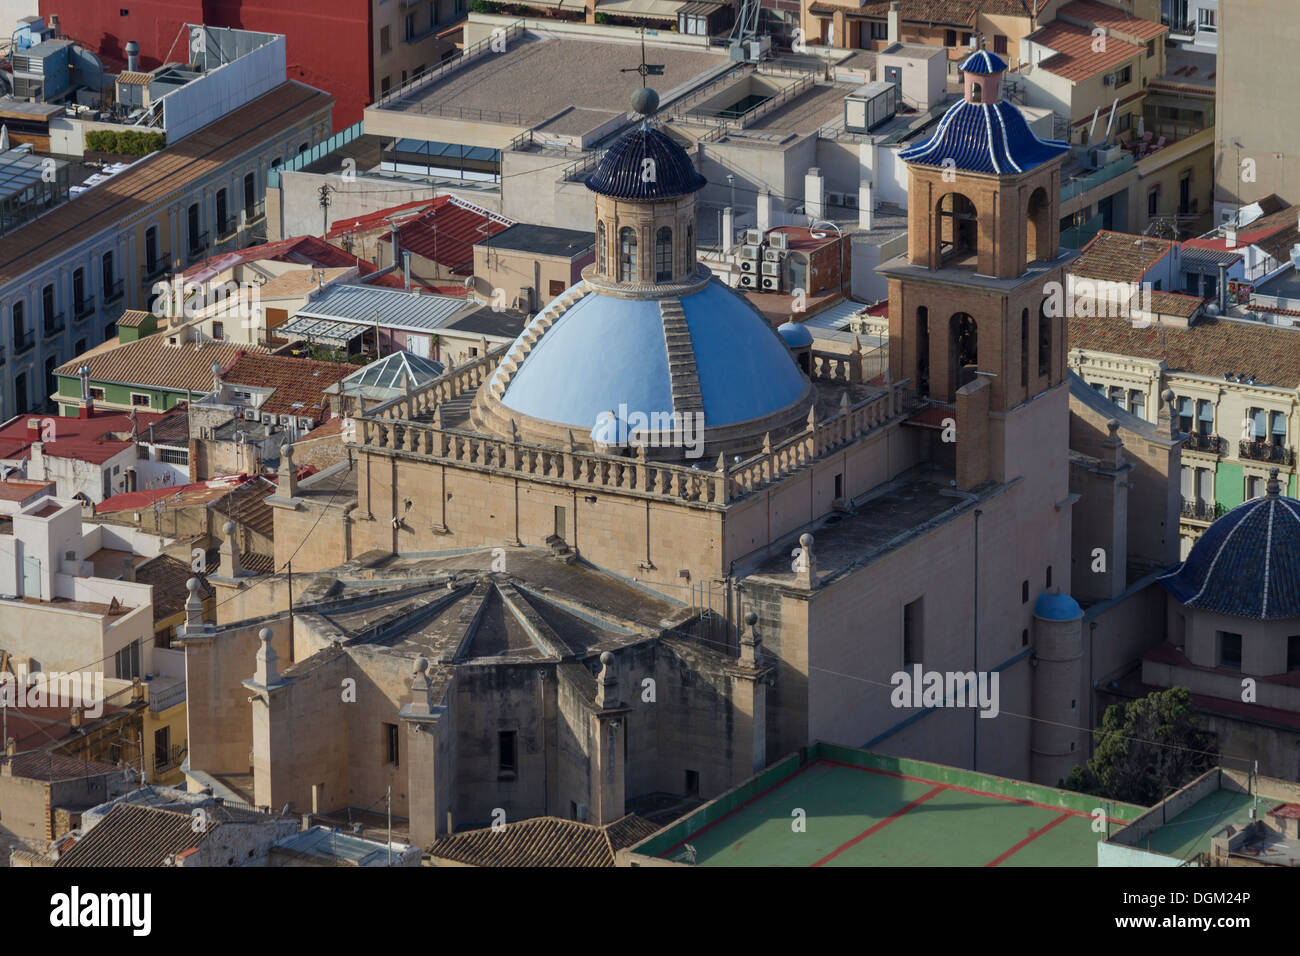 Spain Alicante, San Nicolas cathedral Stock Photo